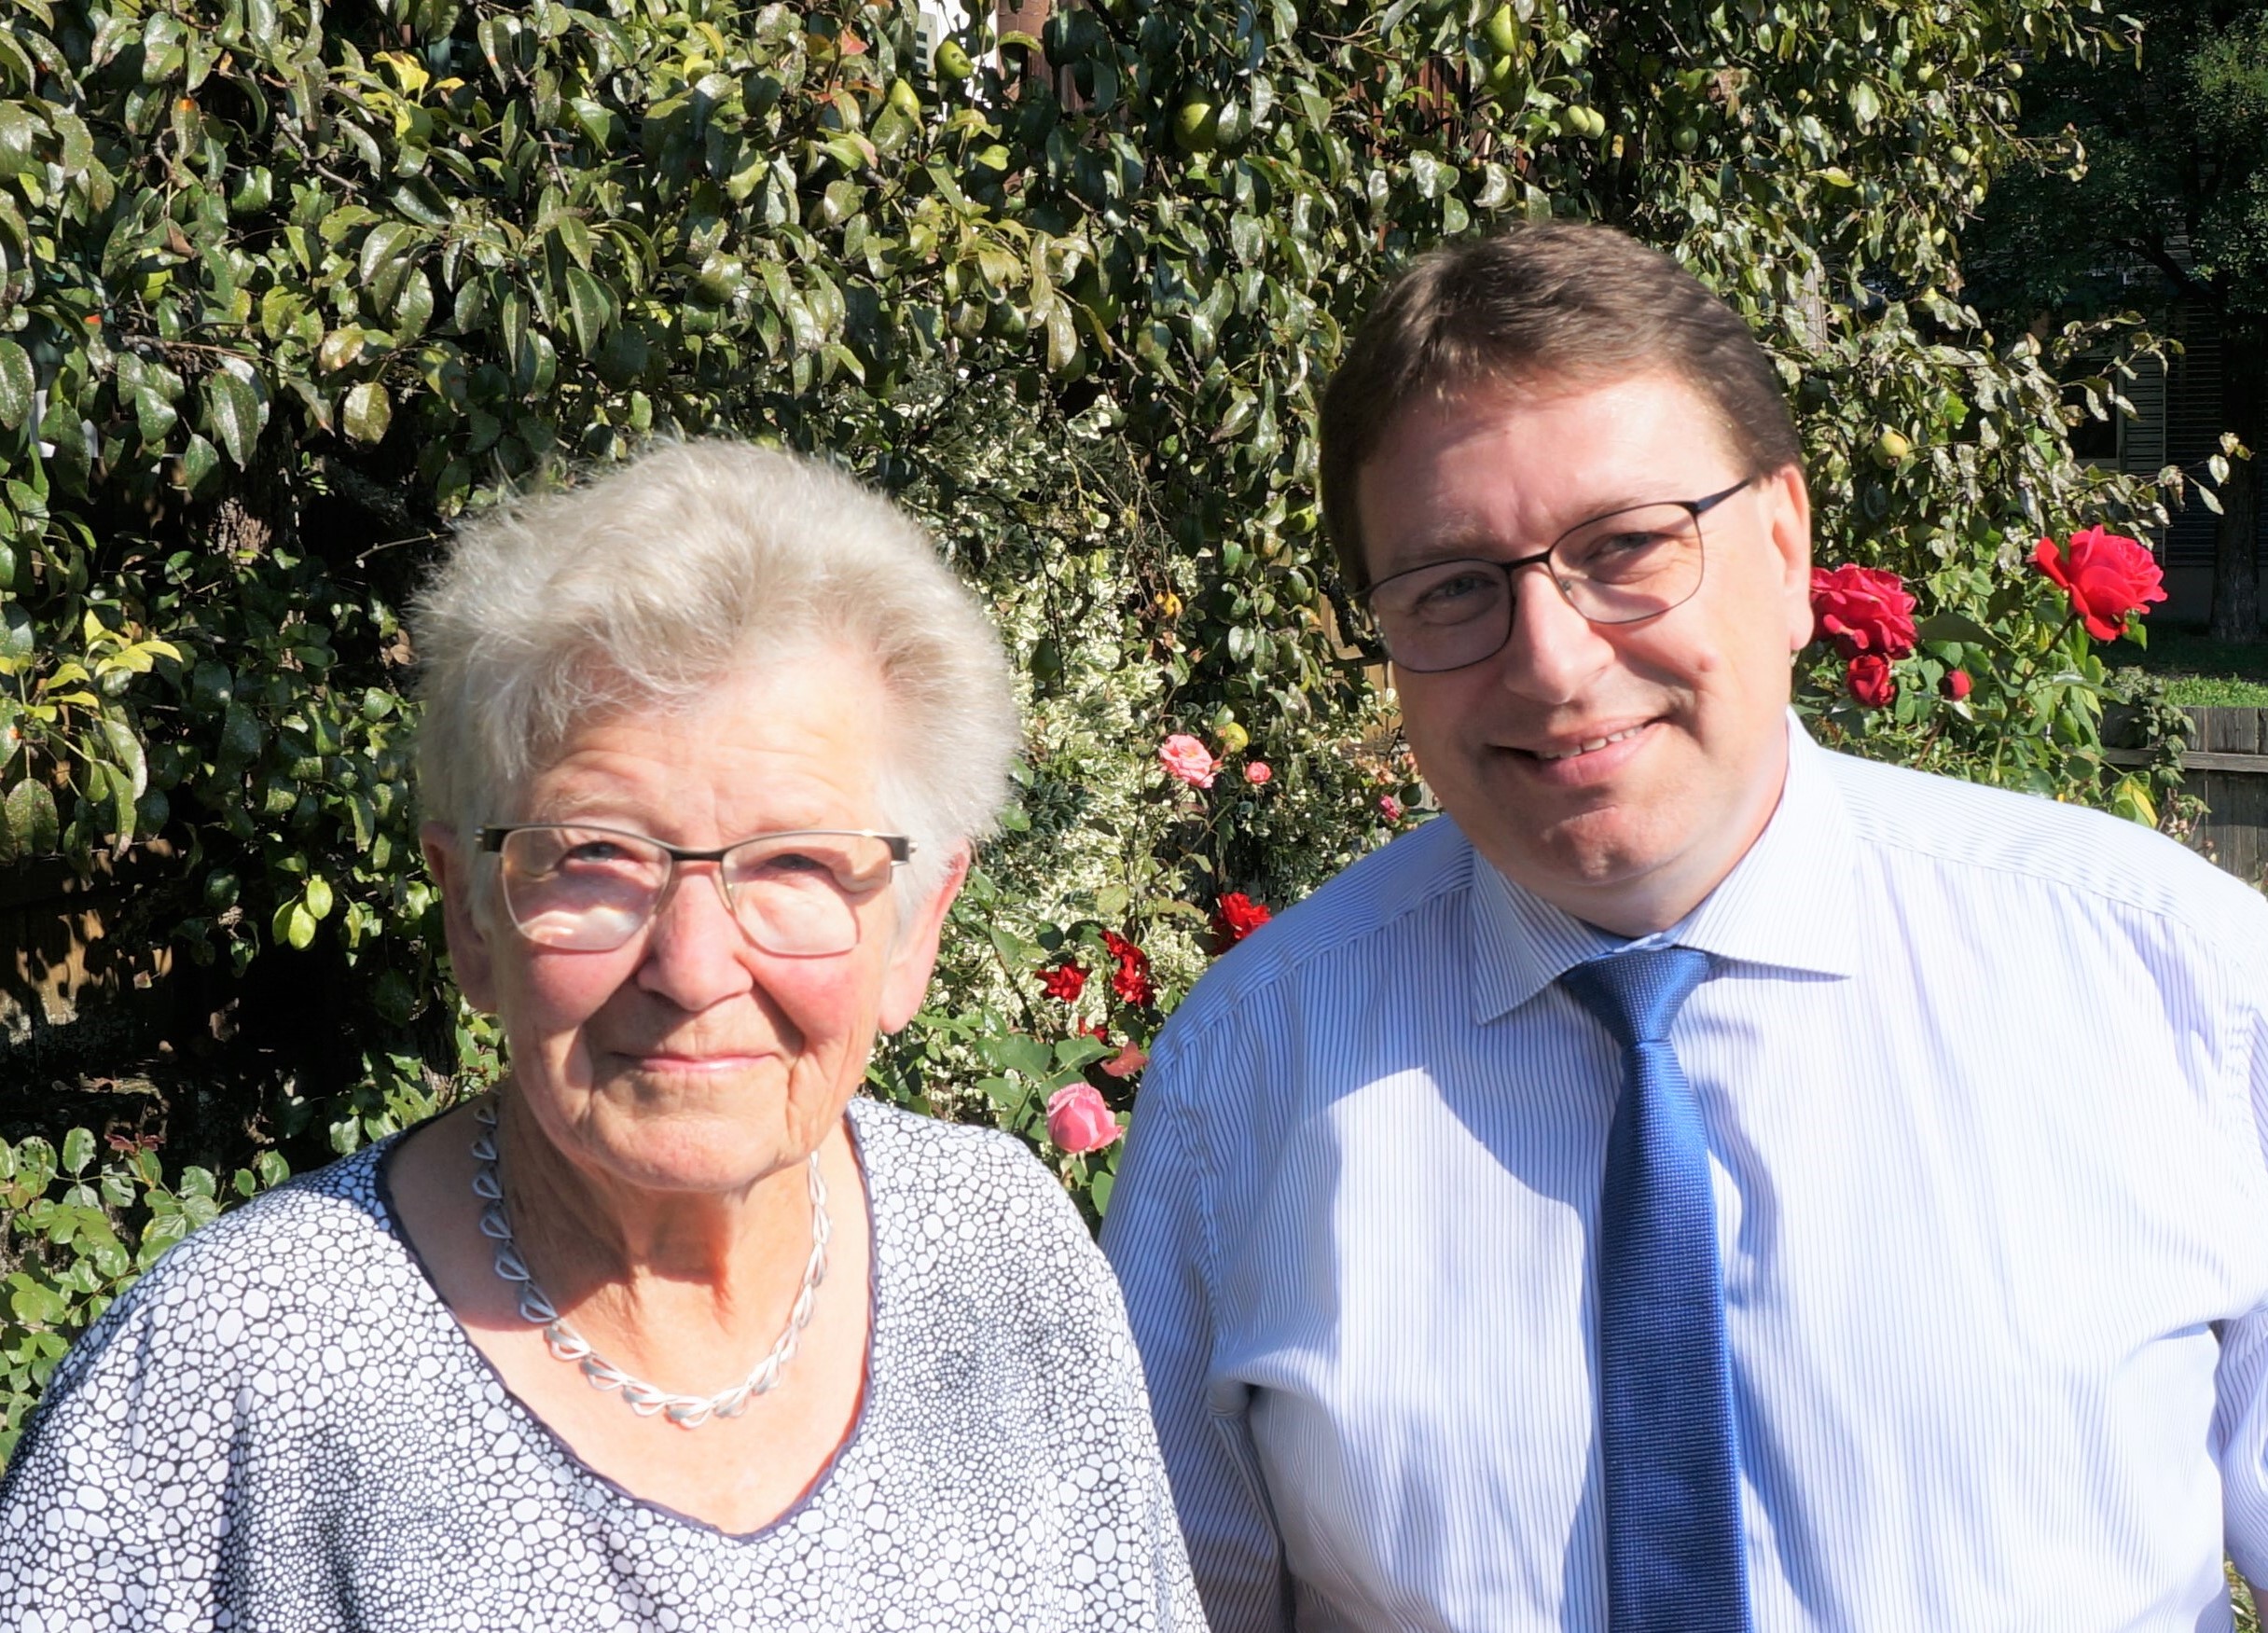 Am Samstag, 12. September 2020, durfte Frau Olga Krebs ihren 90. Geburtstag feiern.
Die Gemeindebehörden gratulieren herzlich dazu!